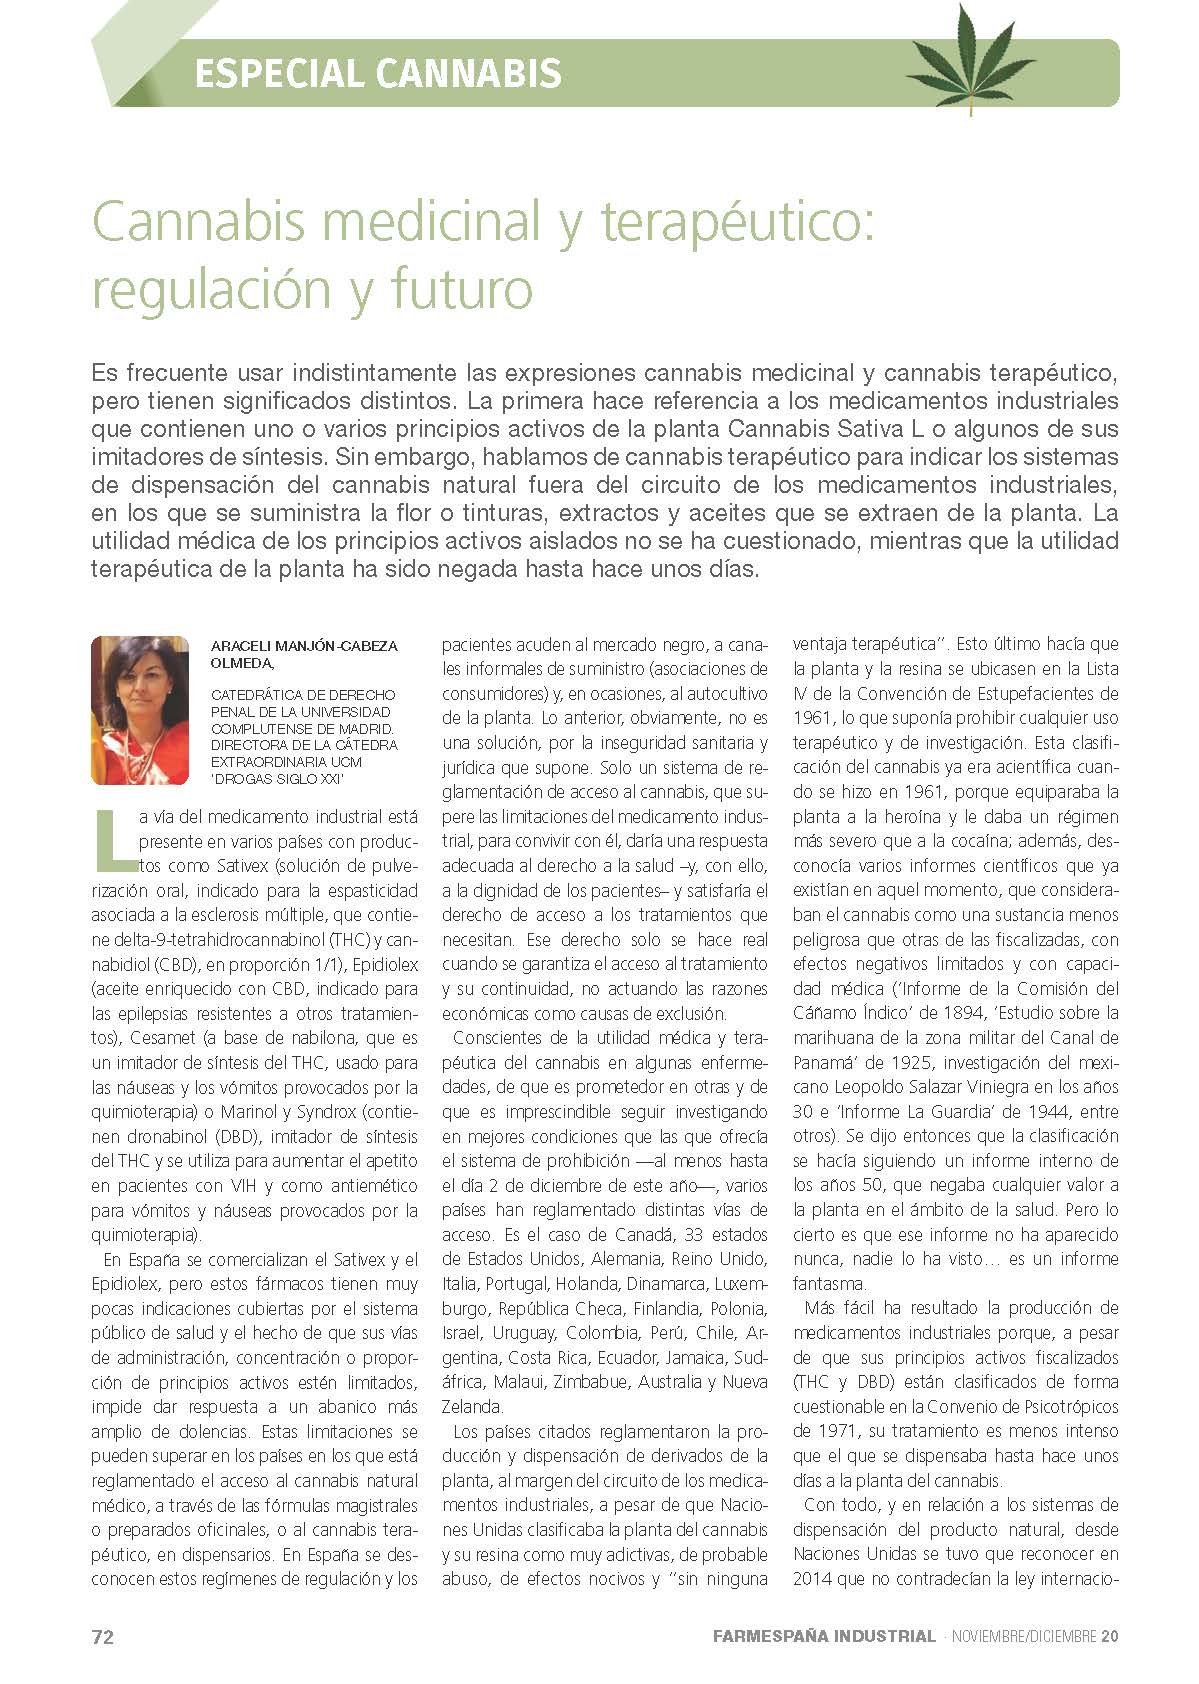 "Cannabis medicinal y terapéutico: regulación y futuro" por Araceli Manjón-Cabeza - 1